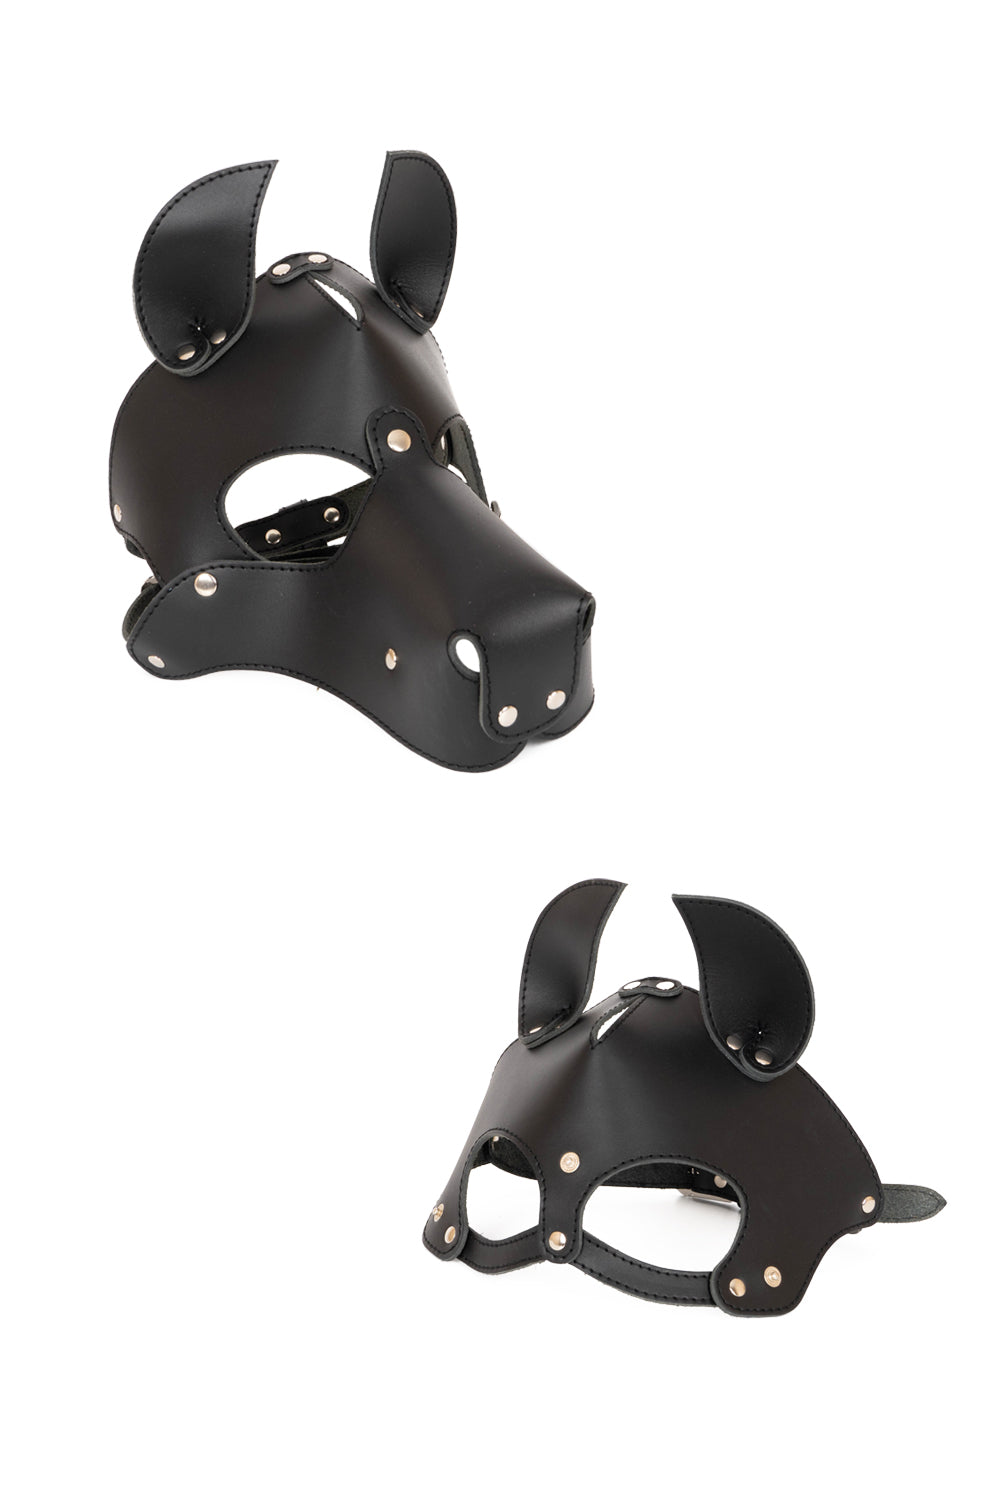 Dog mask with detachable muzzle. Black